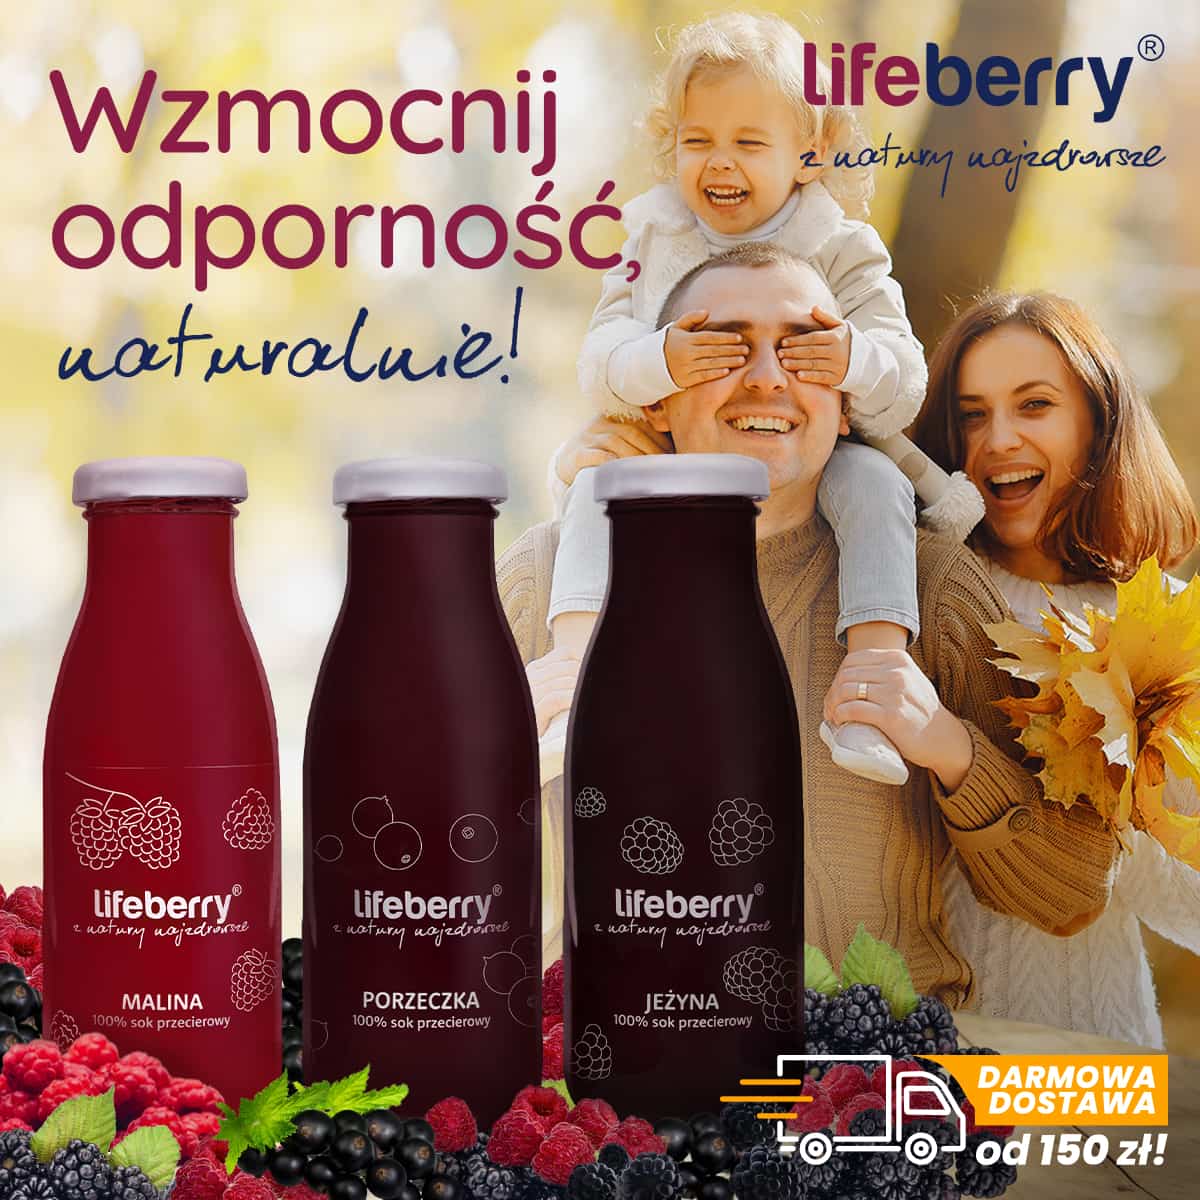 Lifeberry naturalna odporność